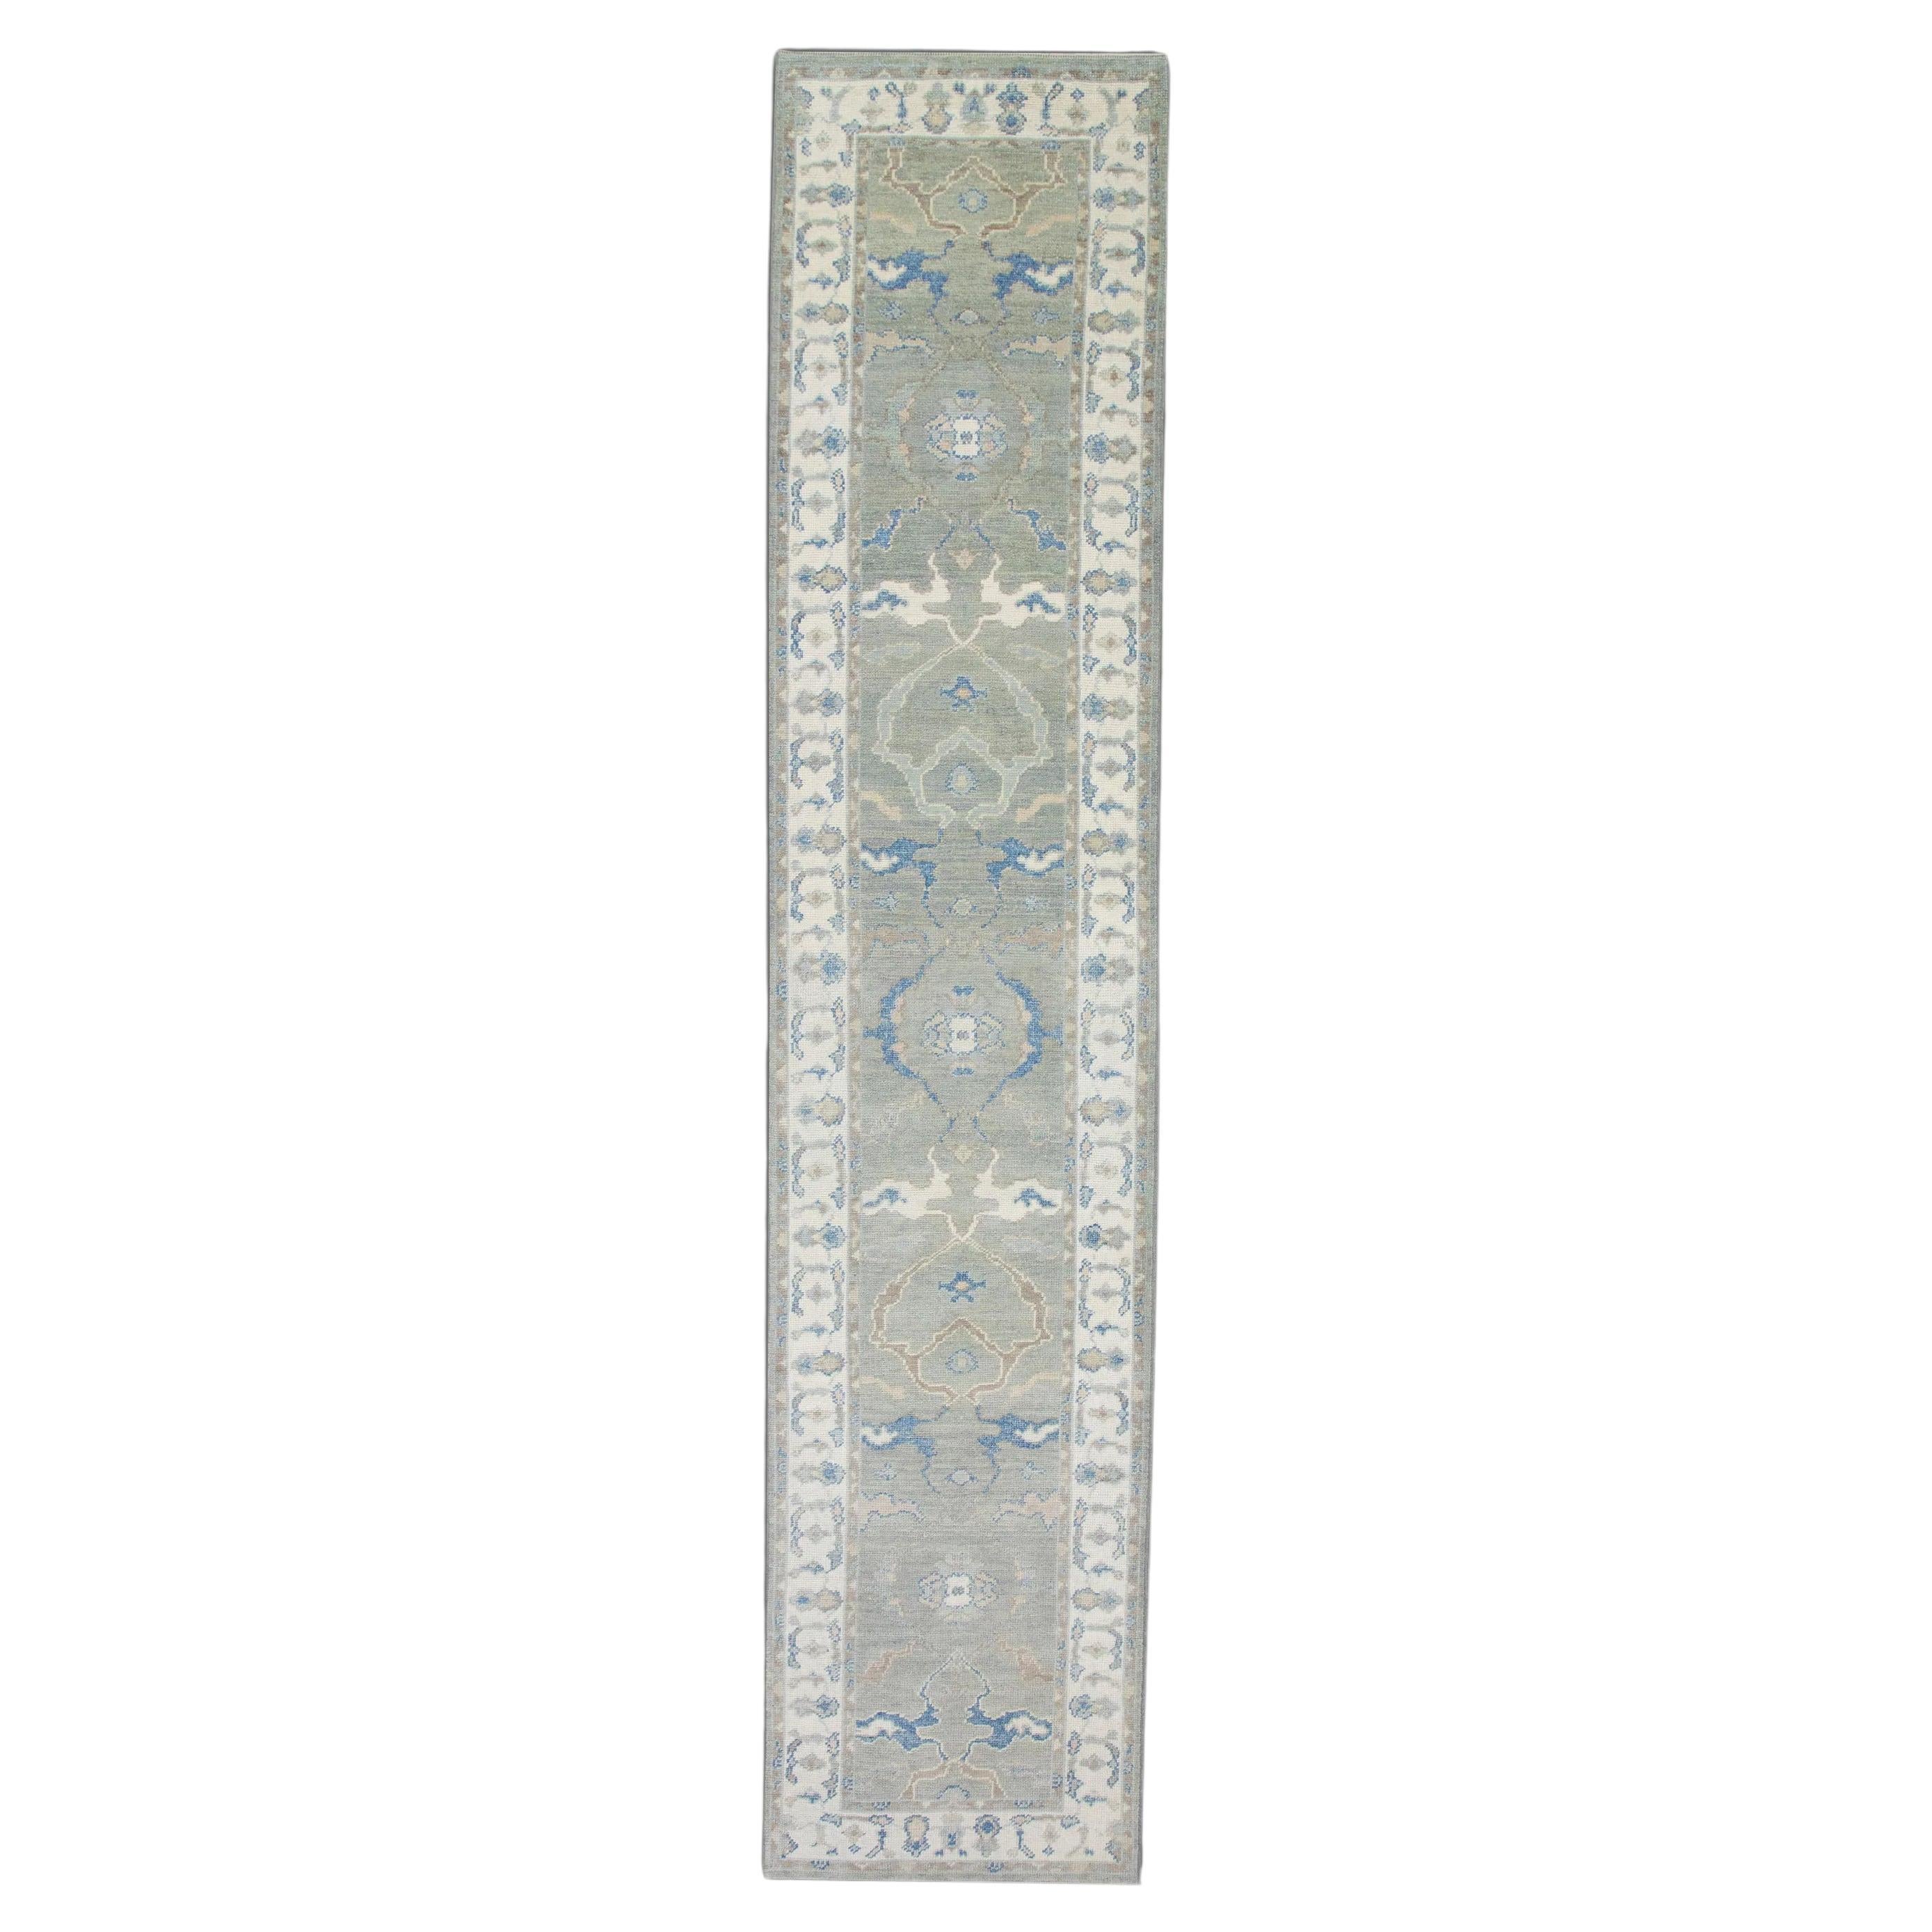 Orientalischer handgeknüpfter türkischer Oushak-Teppich 2'10" x 13'5" #5912